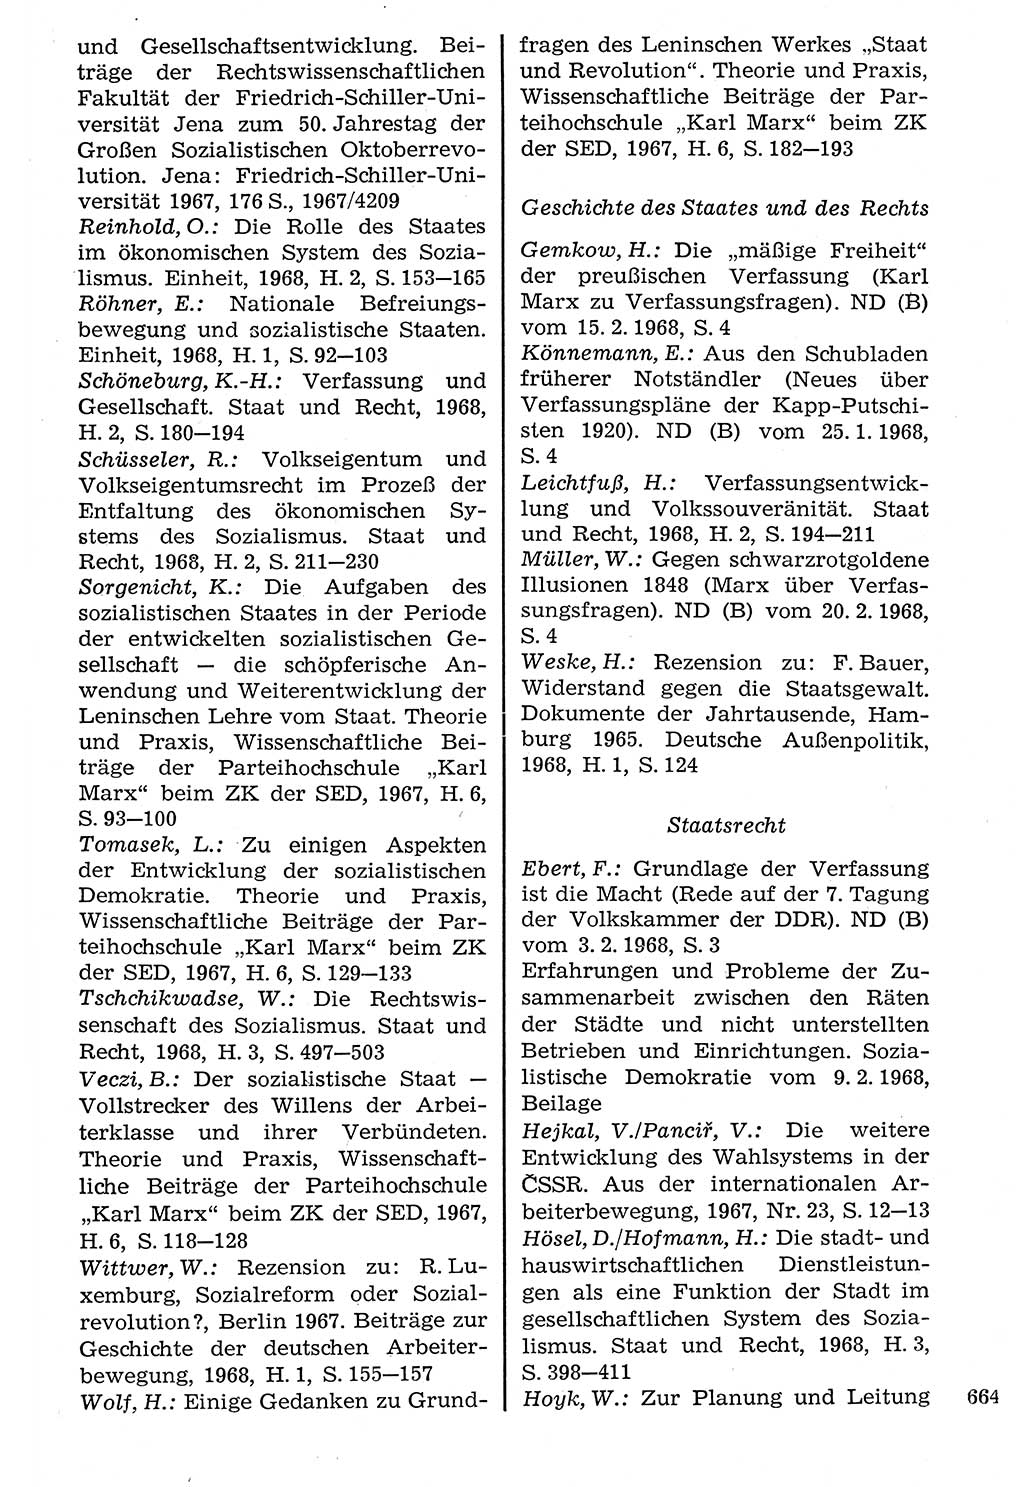 Staat und Recht (StuR), 17. Jahrgang [Deutsche Demokratische Republik (DDR)] 1968, Seite 664 (StuR DDR 1968, S. 664)